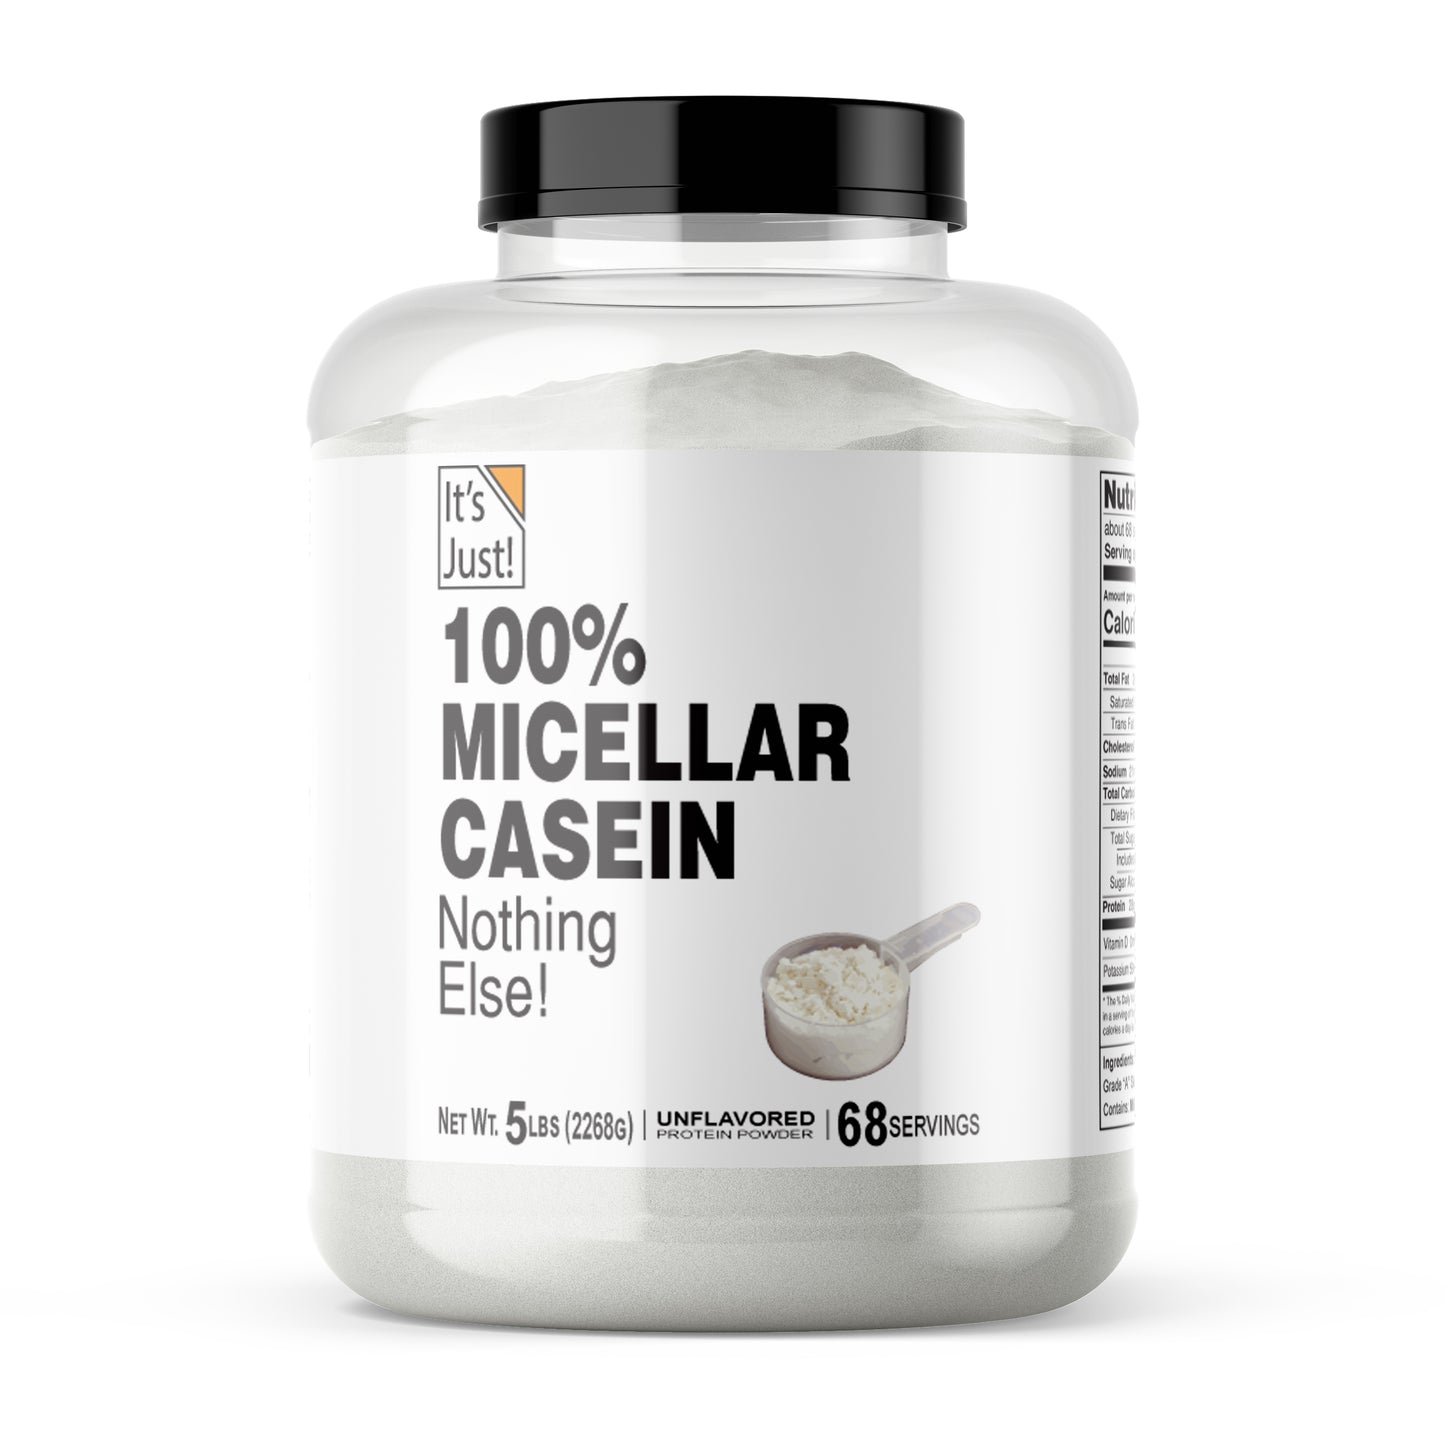 It's Just! - Micellar Casein Protein